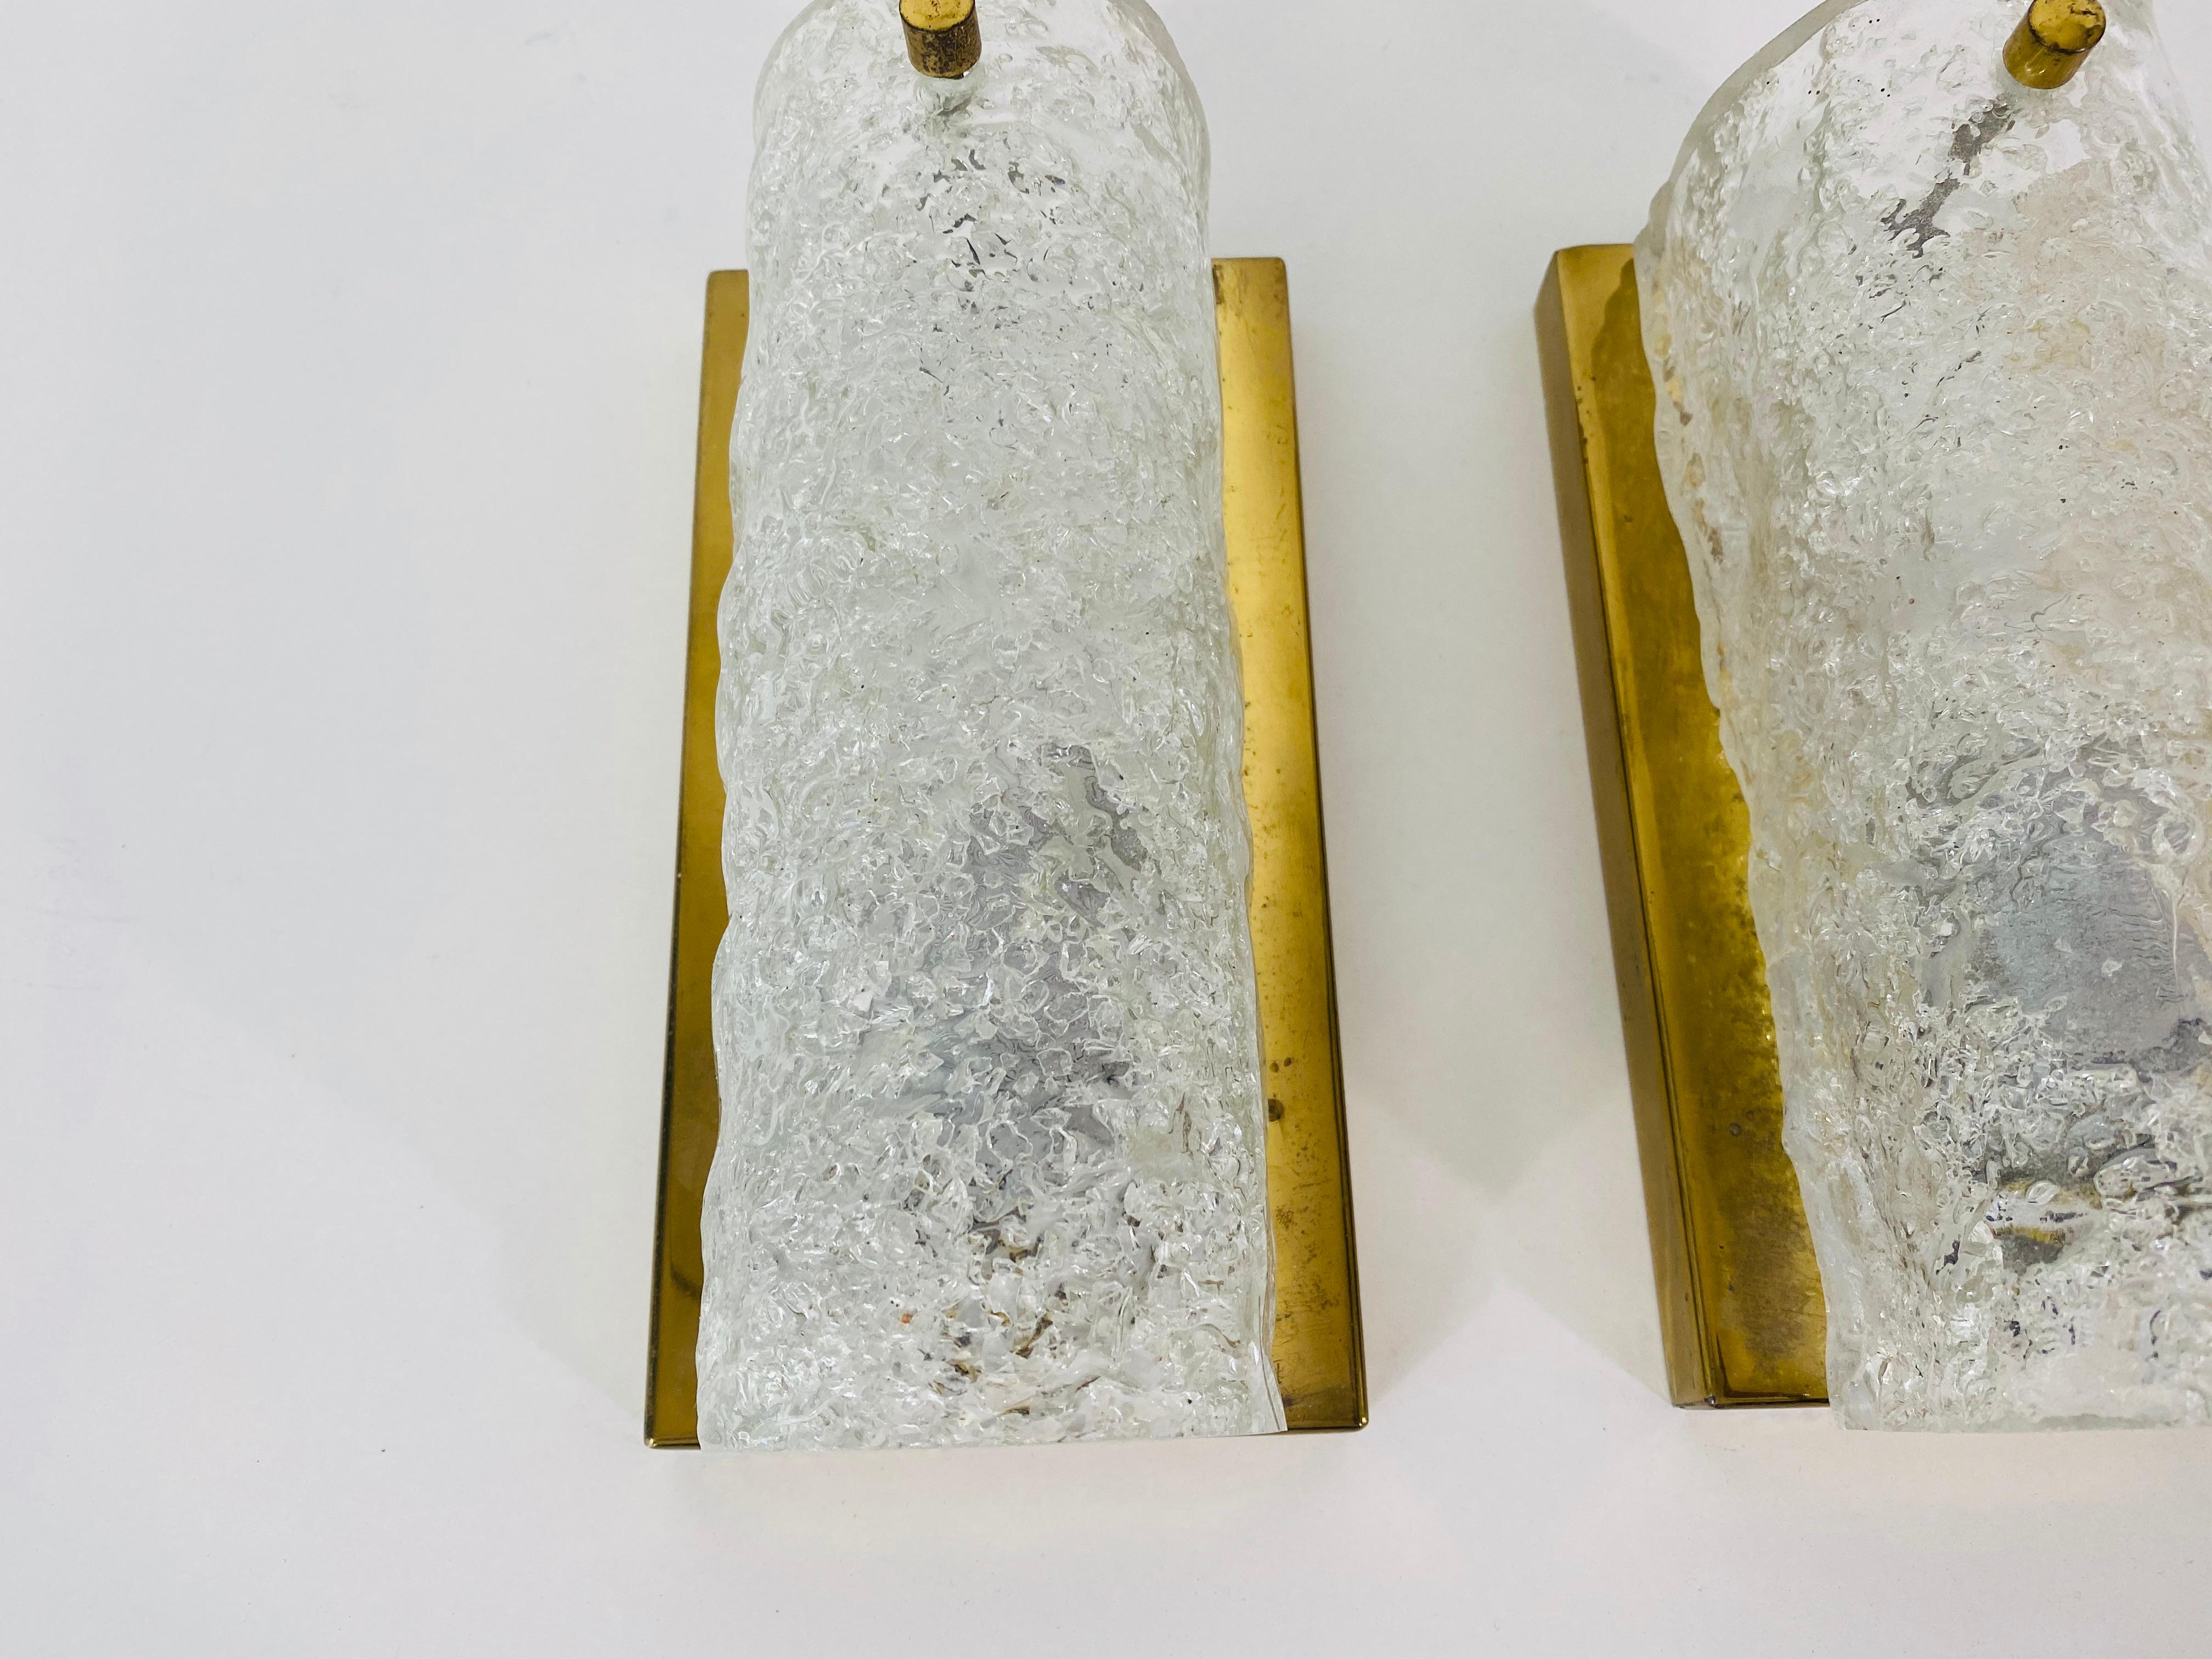 Paire d'appliques de Hillebrand Leuchten fabriquées en Allemagne dans les années 1960. Il est fascinant avec sa forme de verre rare. La partie inférieure de la lampe est en laiton.

La lampe nécessite une ampoule E14. Très bon état